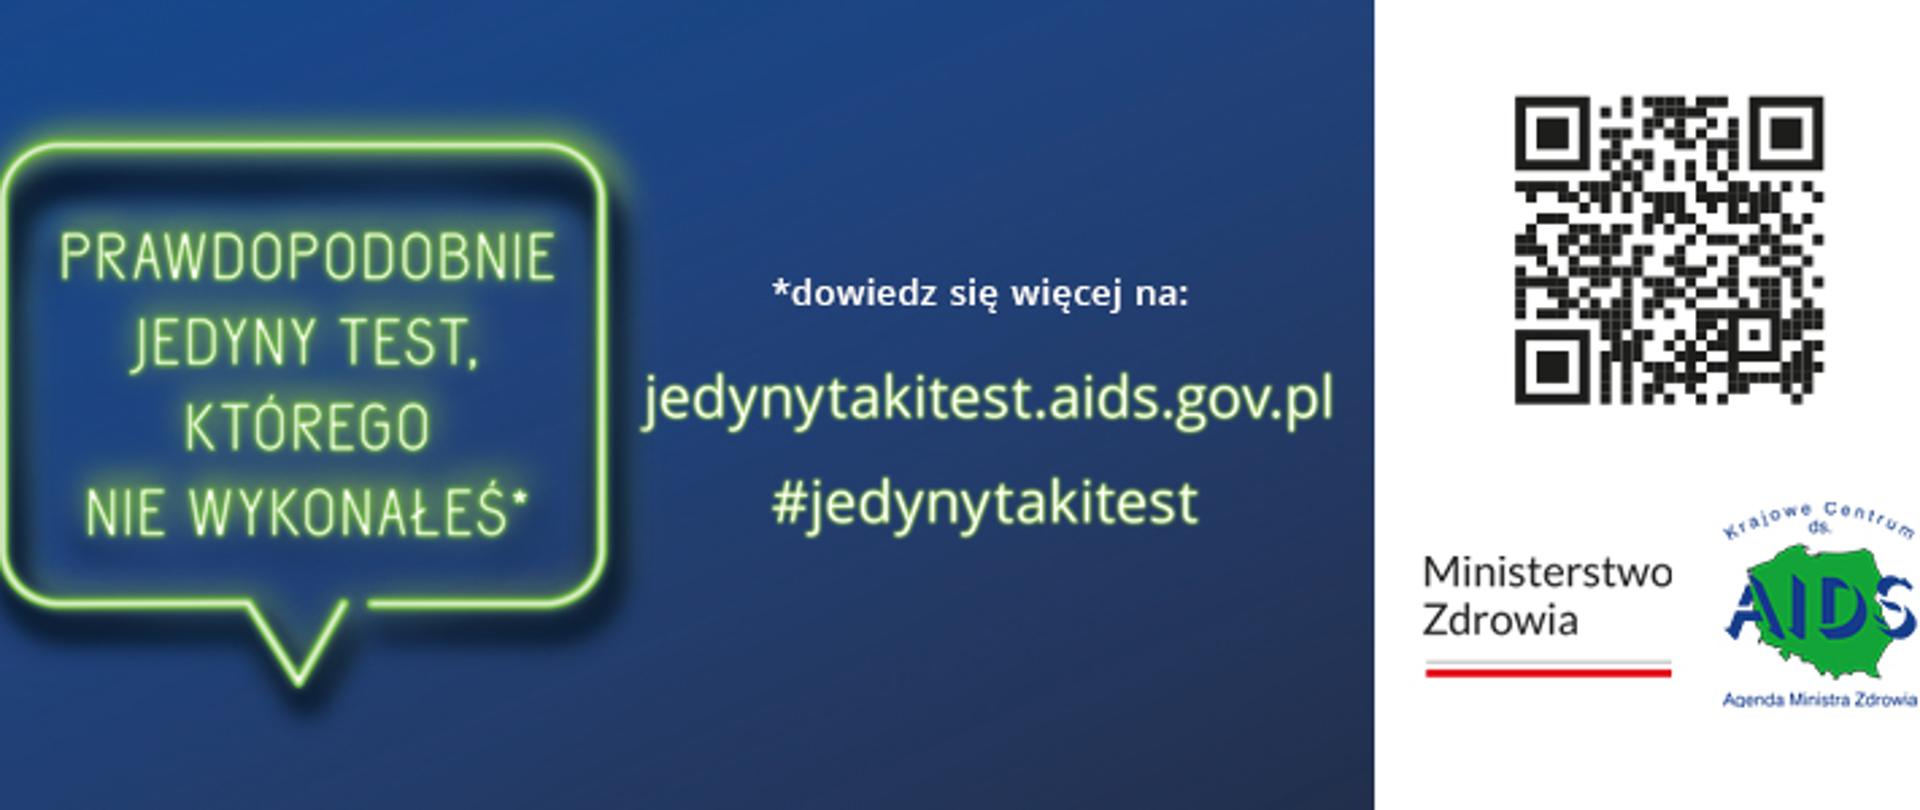 Prawdopodobnie jedyny test, którego nie wykonałeś. Dowiedz się więcej na jedynytakitest.aids.gov.pl